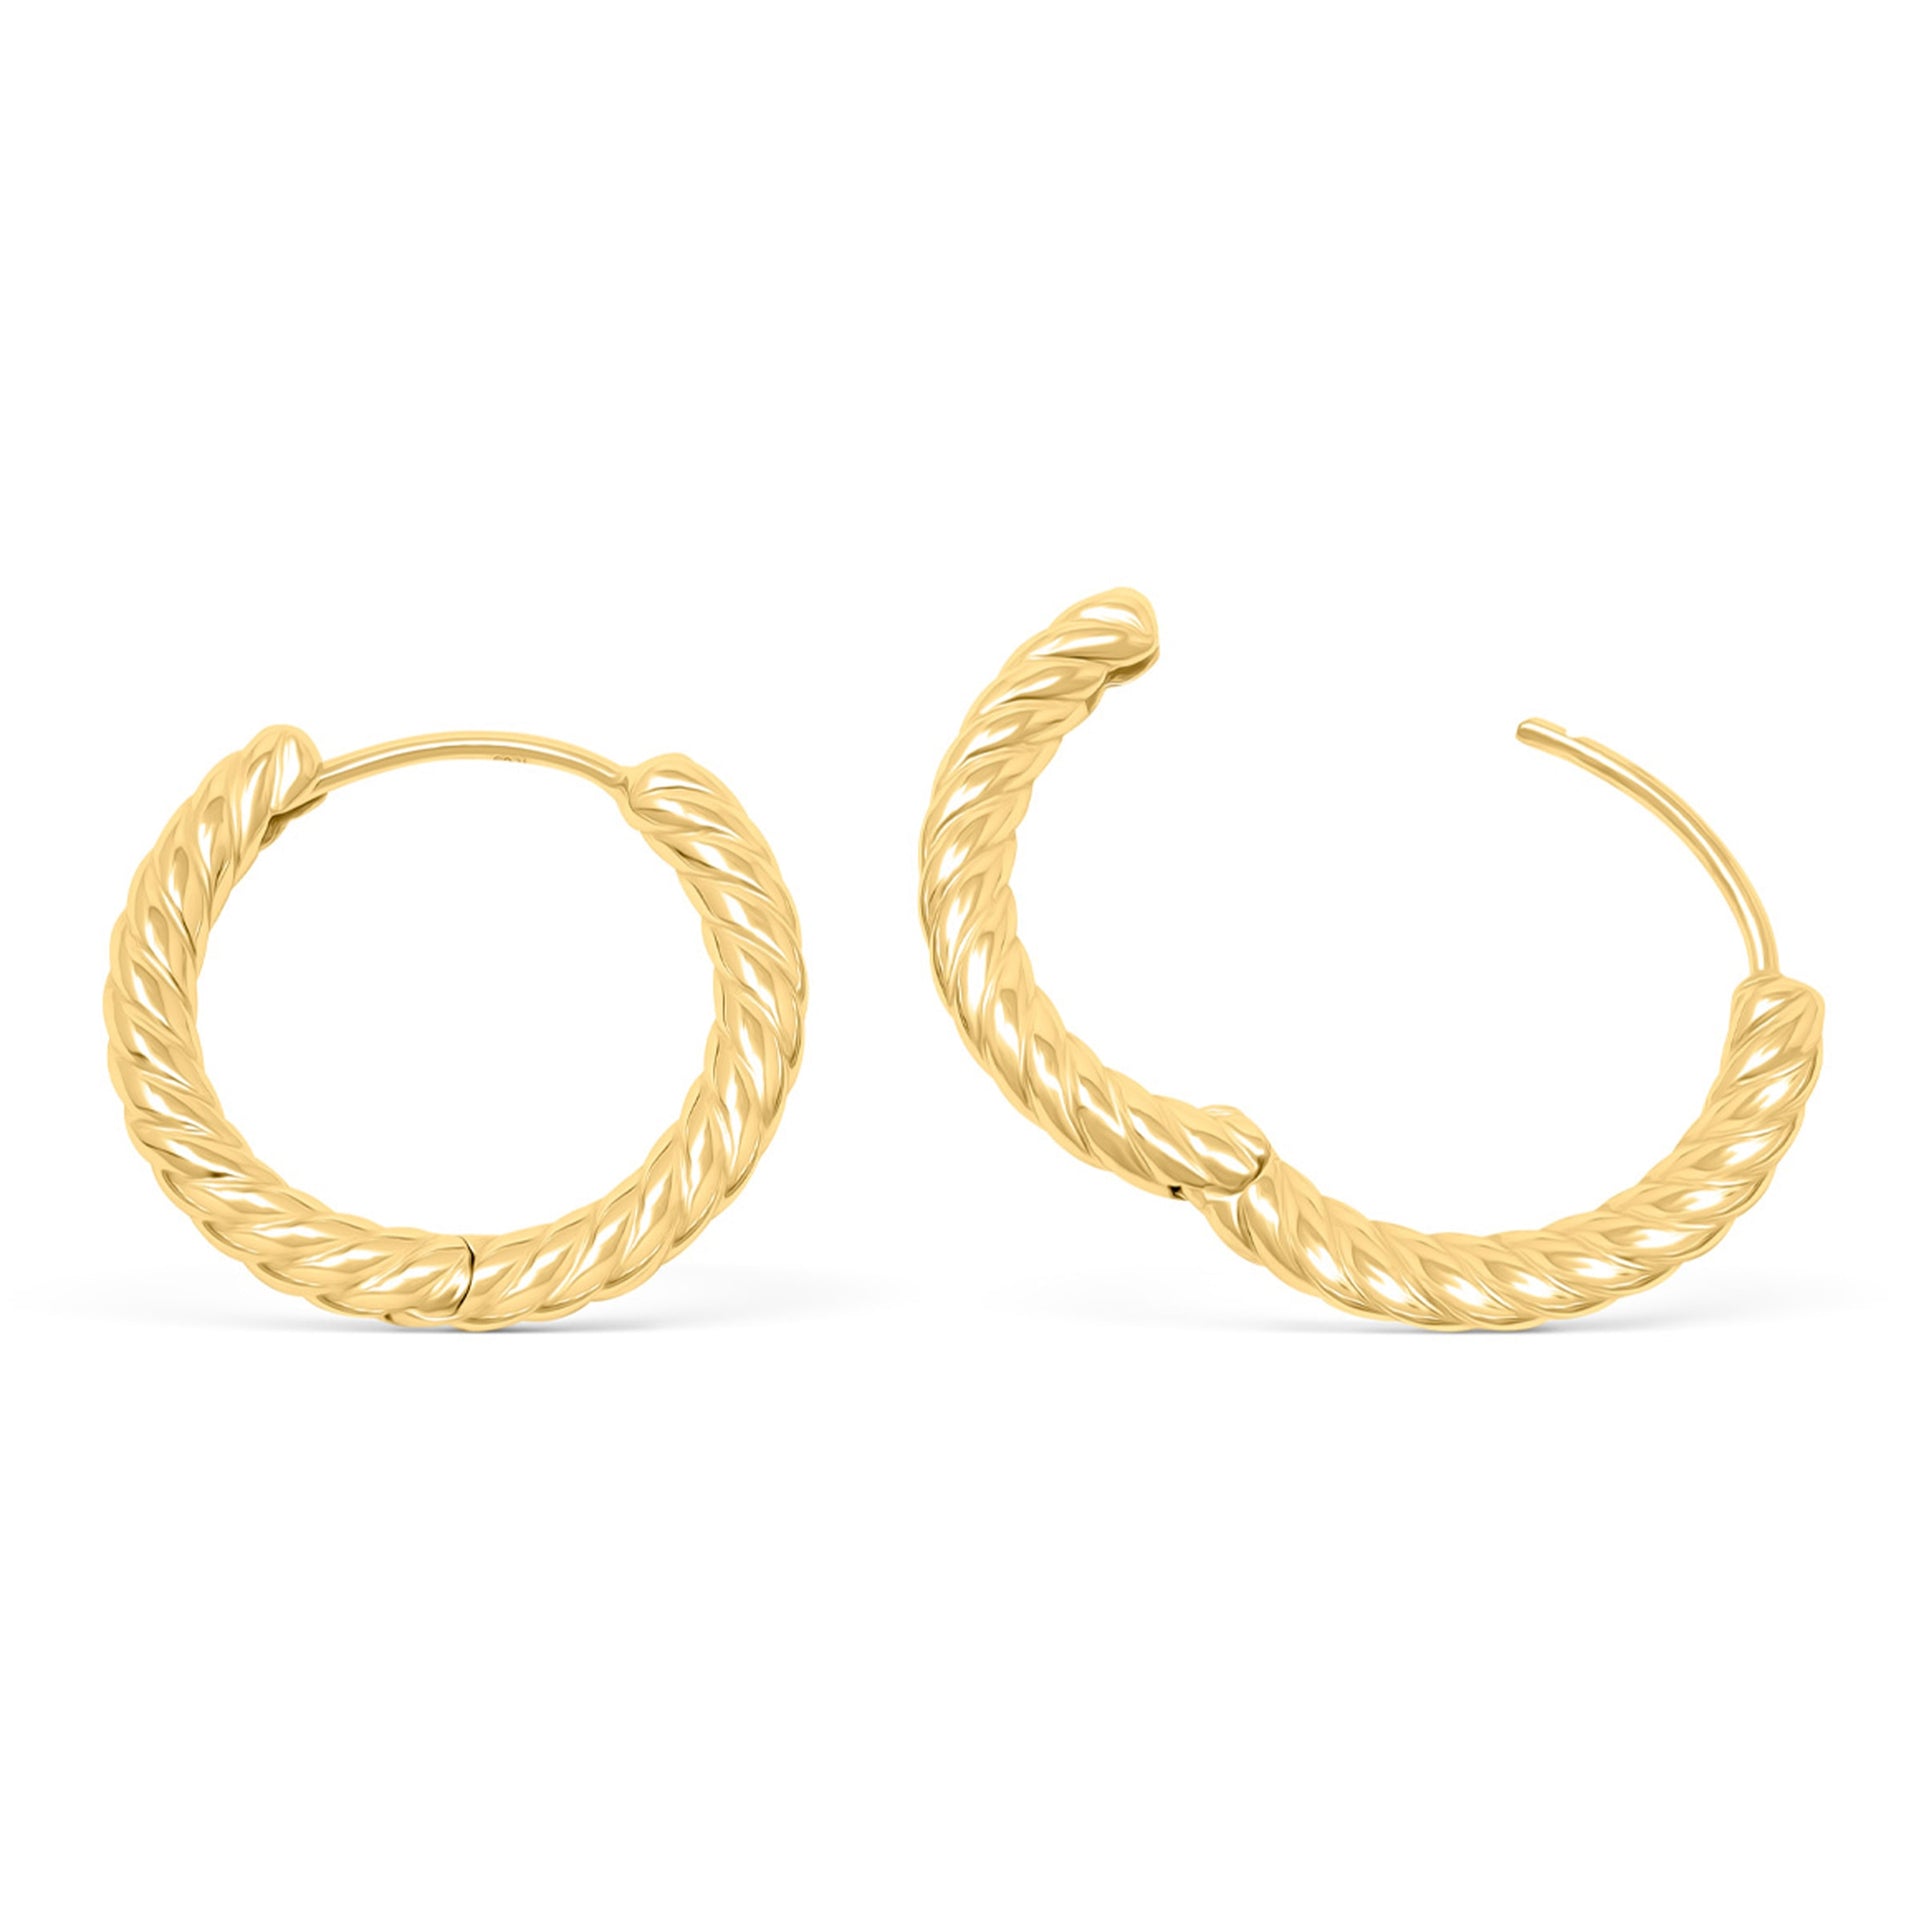 Simple gold plated twisted hoop earrings